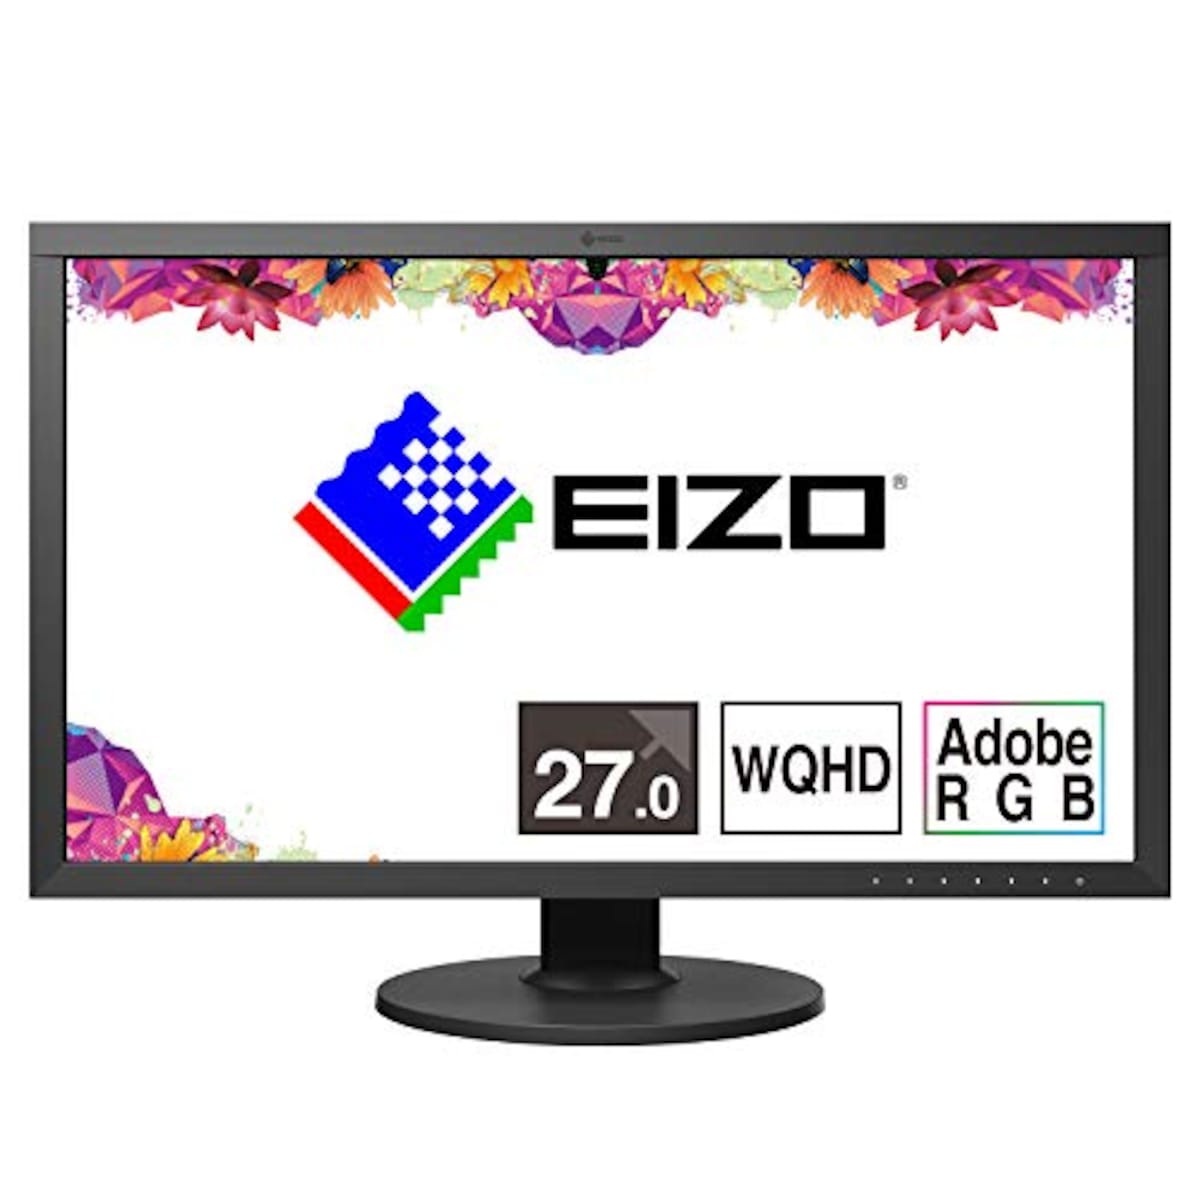 EIZO ColorEdge CS2731 (27型 QHD Wide 1440p カラーマネージメント液晶モニター/Adobe RGB 99%/USB Type-C/)